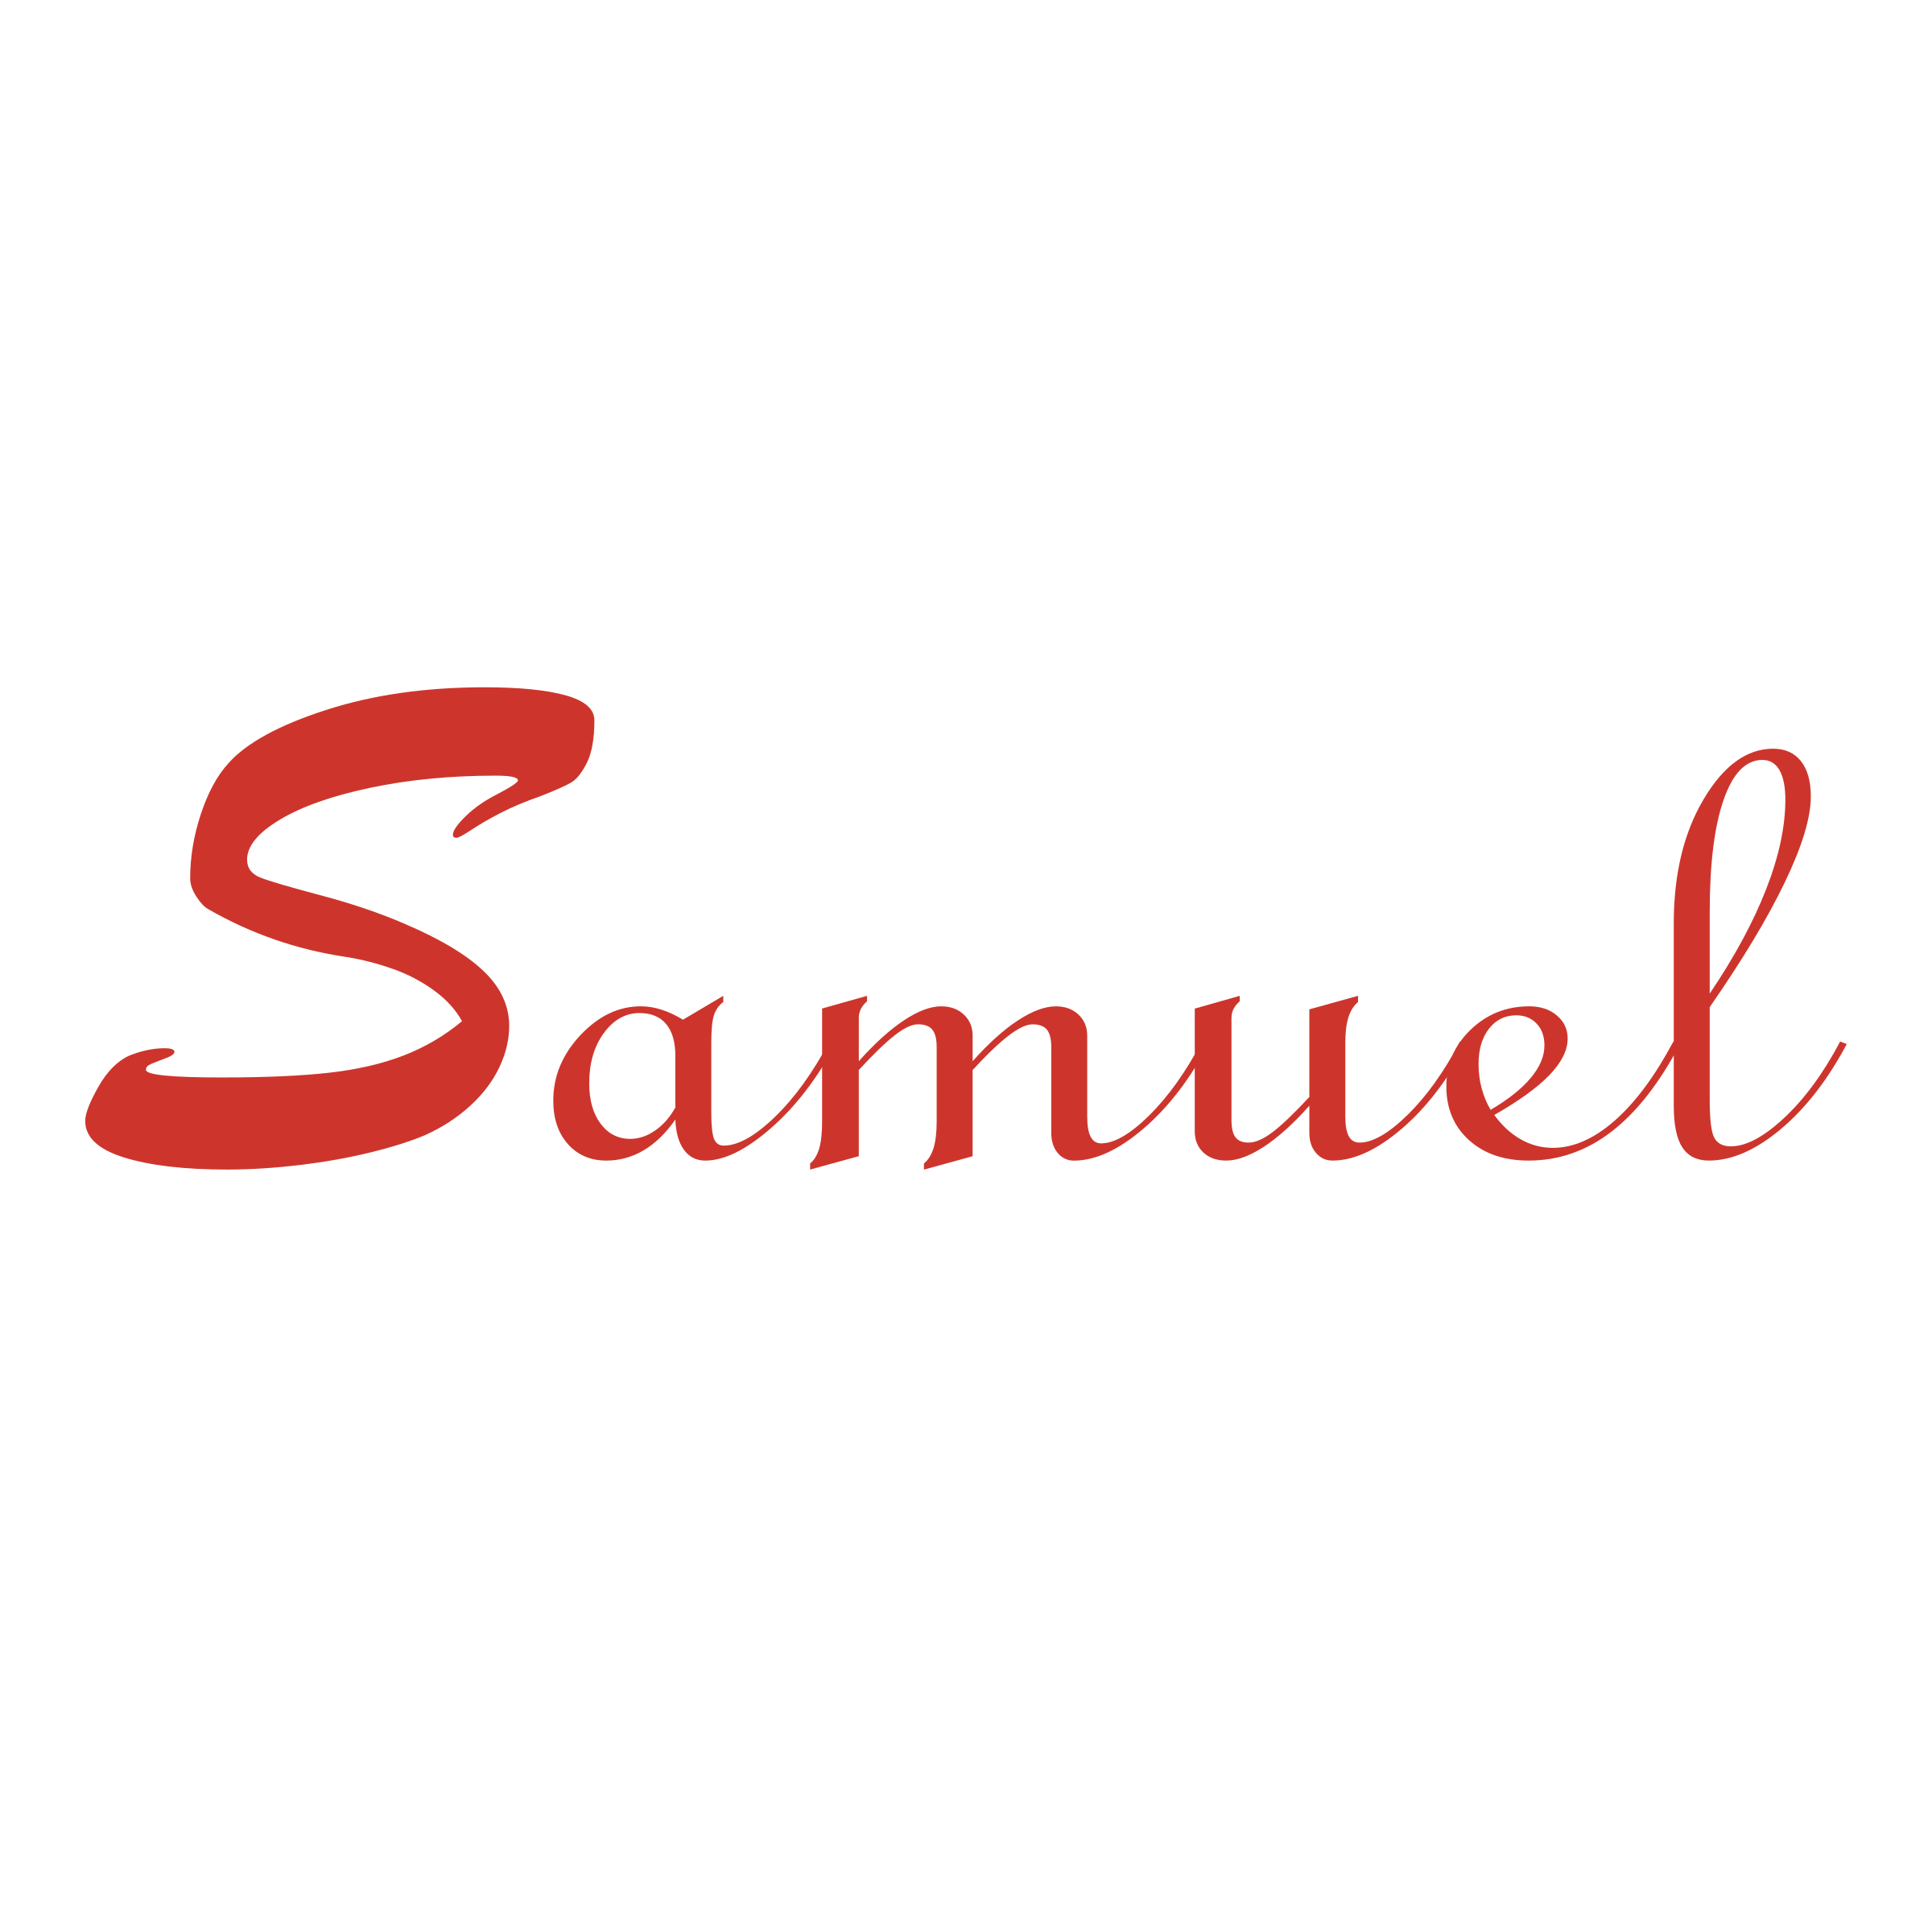 Samuel Logo - Samuel Logo PNG Transparent & SVG Vector